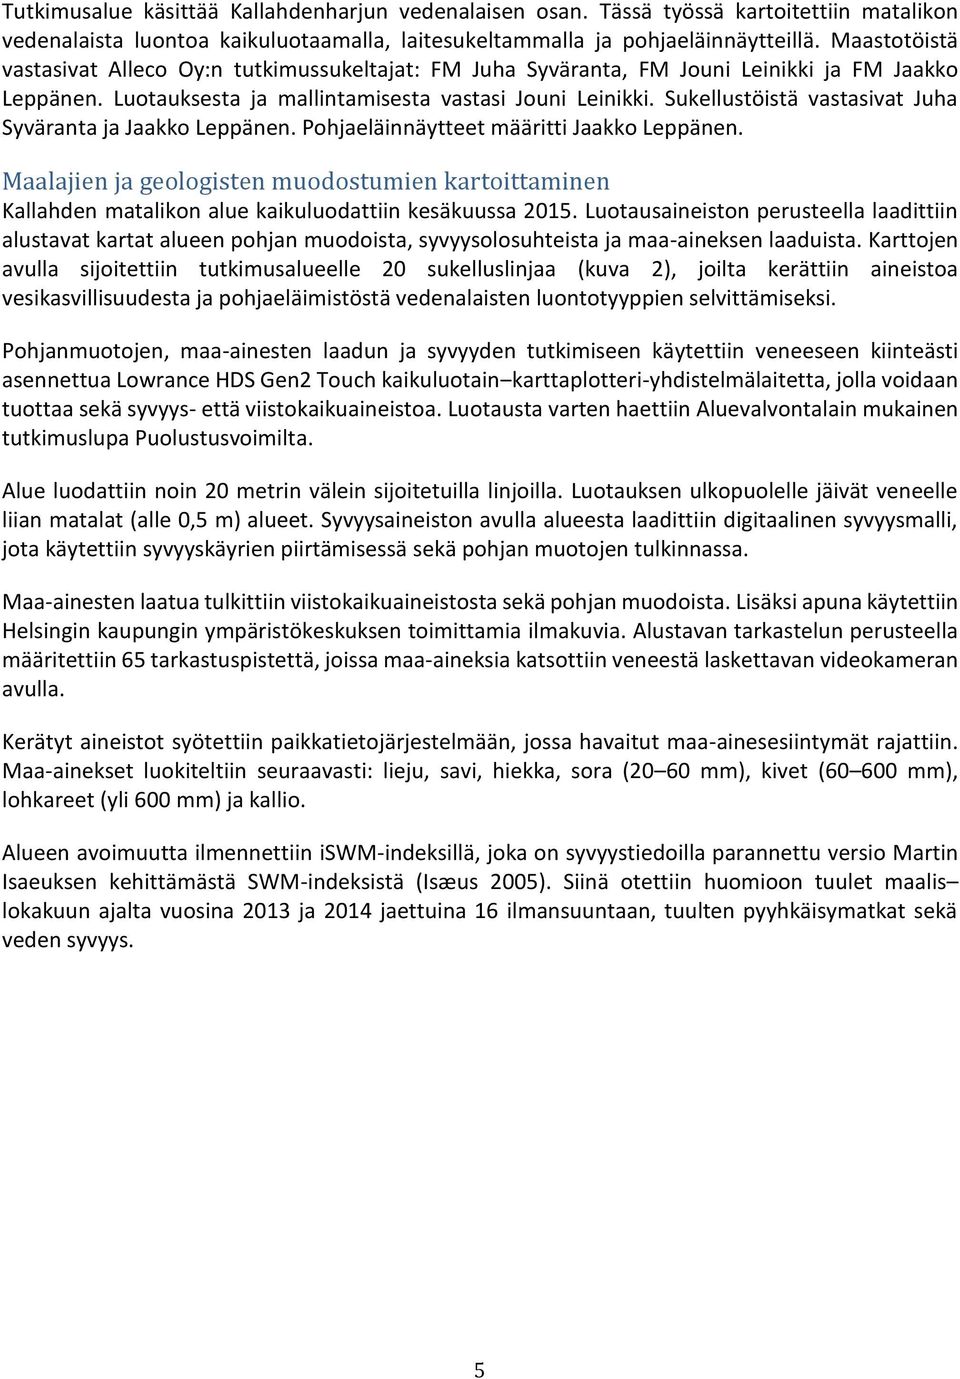 Sukellustöistä vastasivat Juha Syväranta ja Jaakko Leppänen. Pohjaeläinnäytteet määritti Jaakko Leppänen.